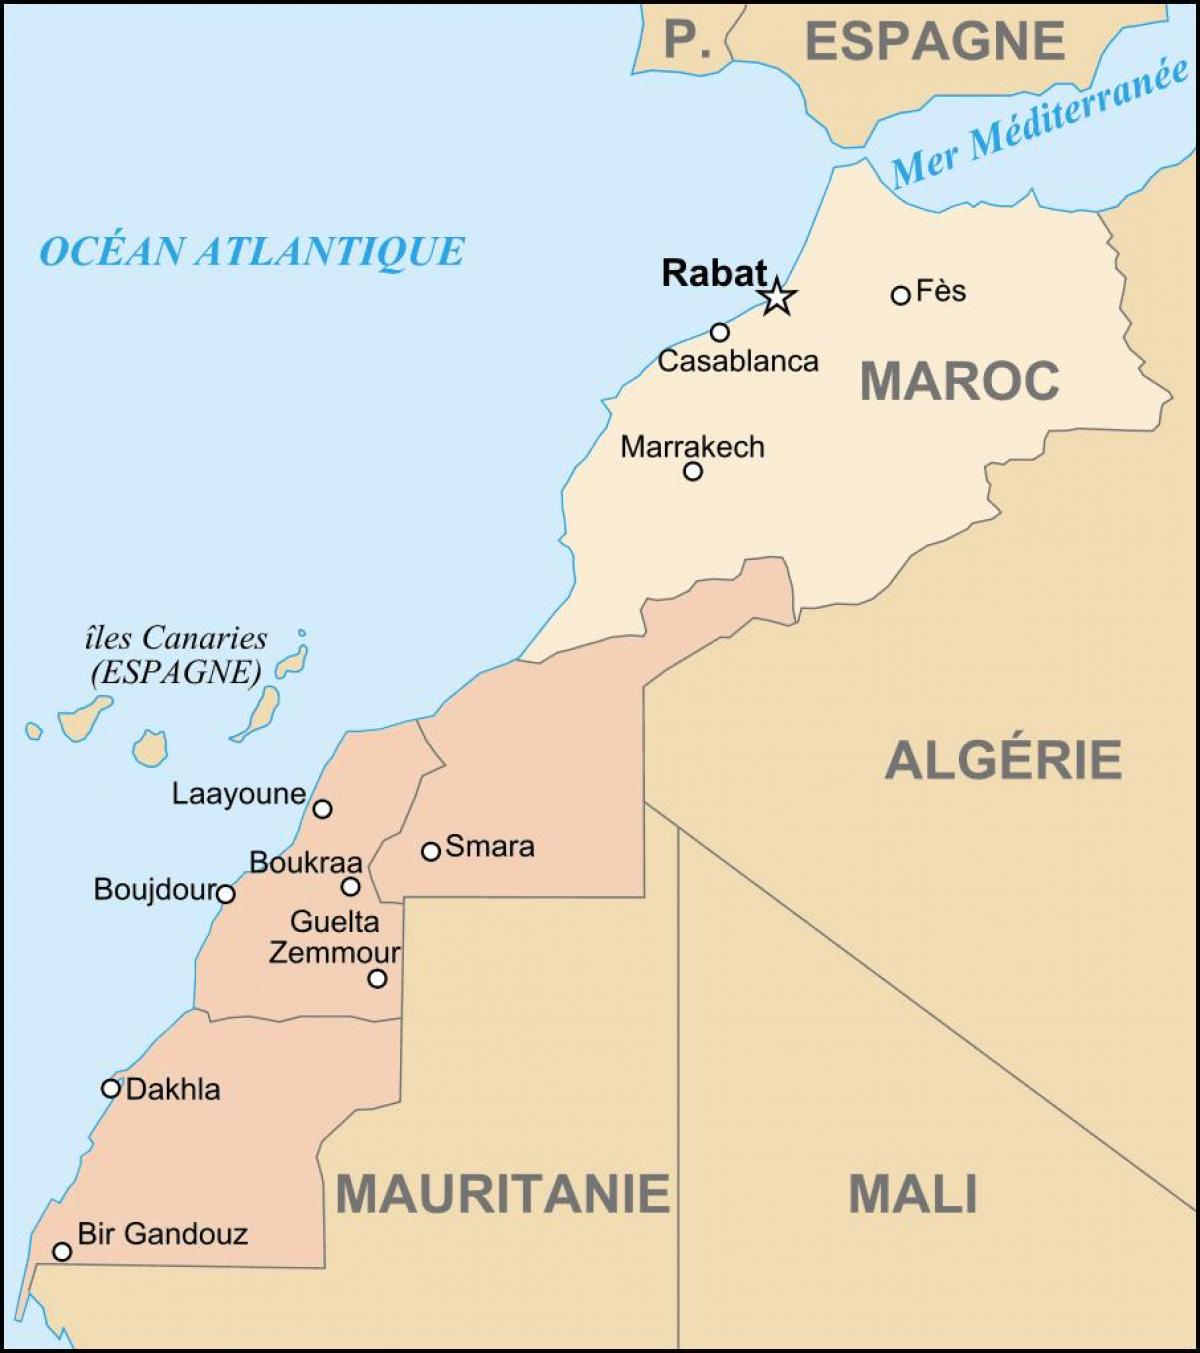 Mapa de Marruecos y países limítrofes